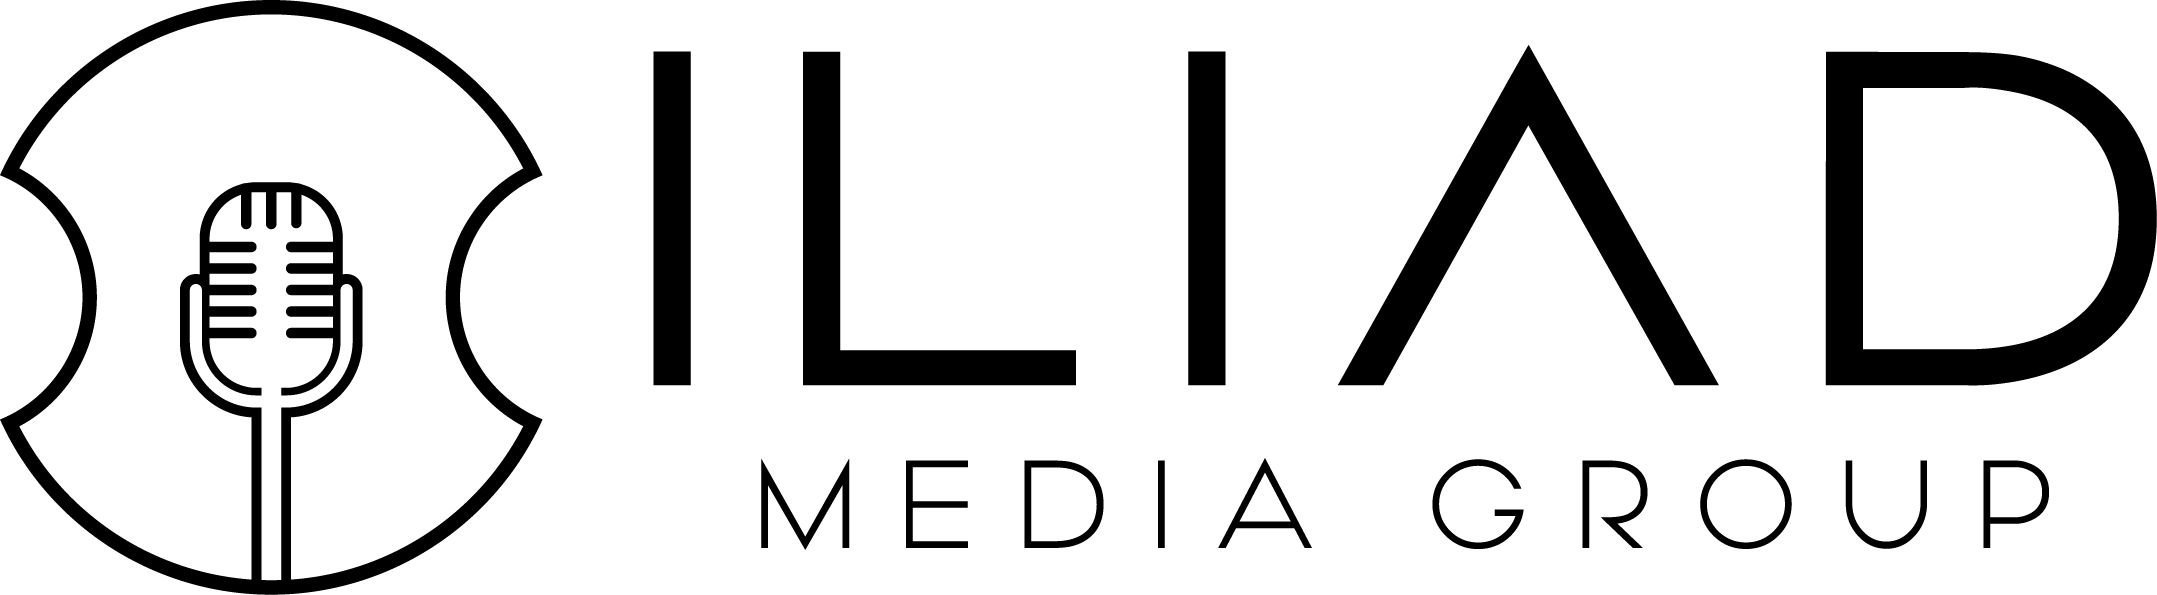 Iliad Media Group Company Logo